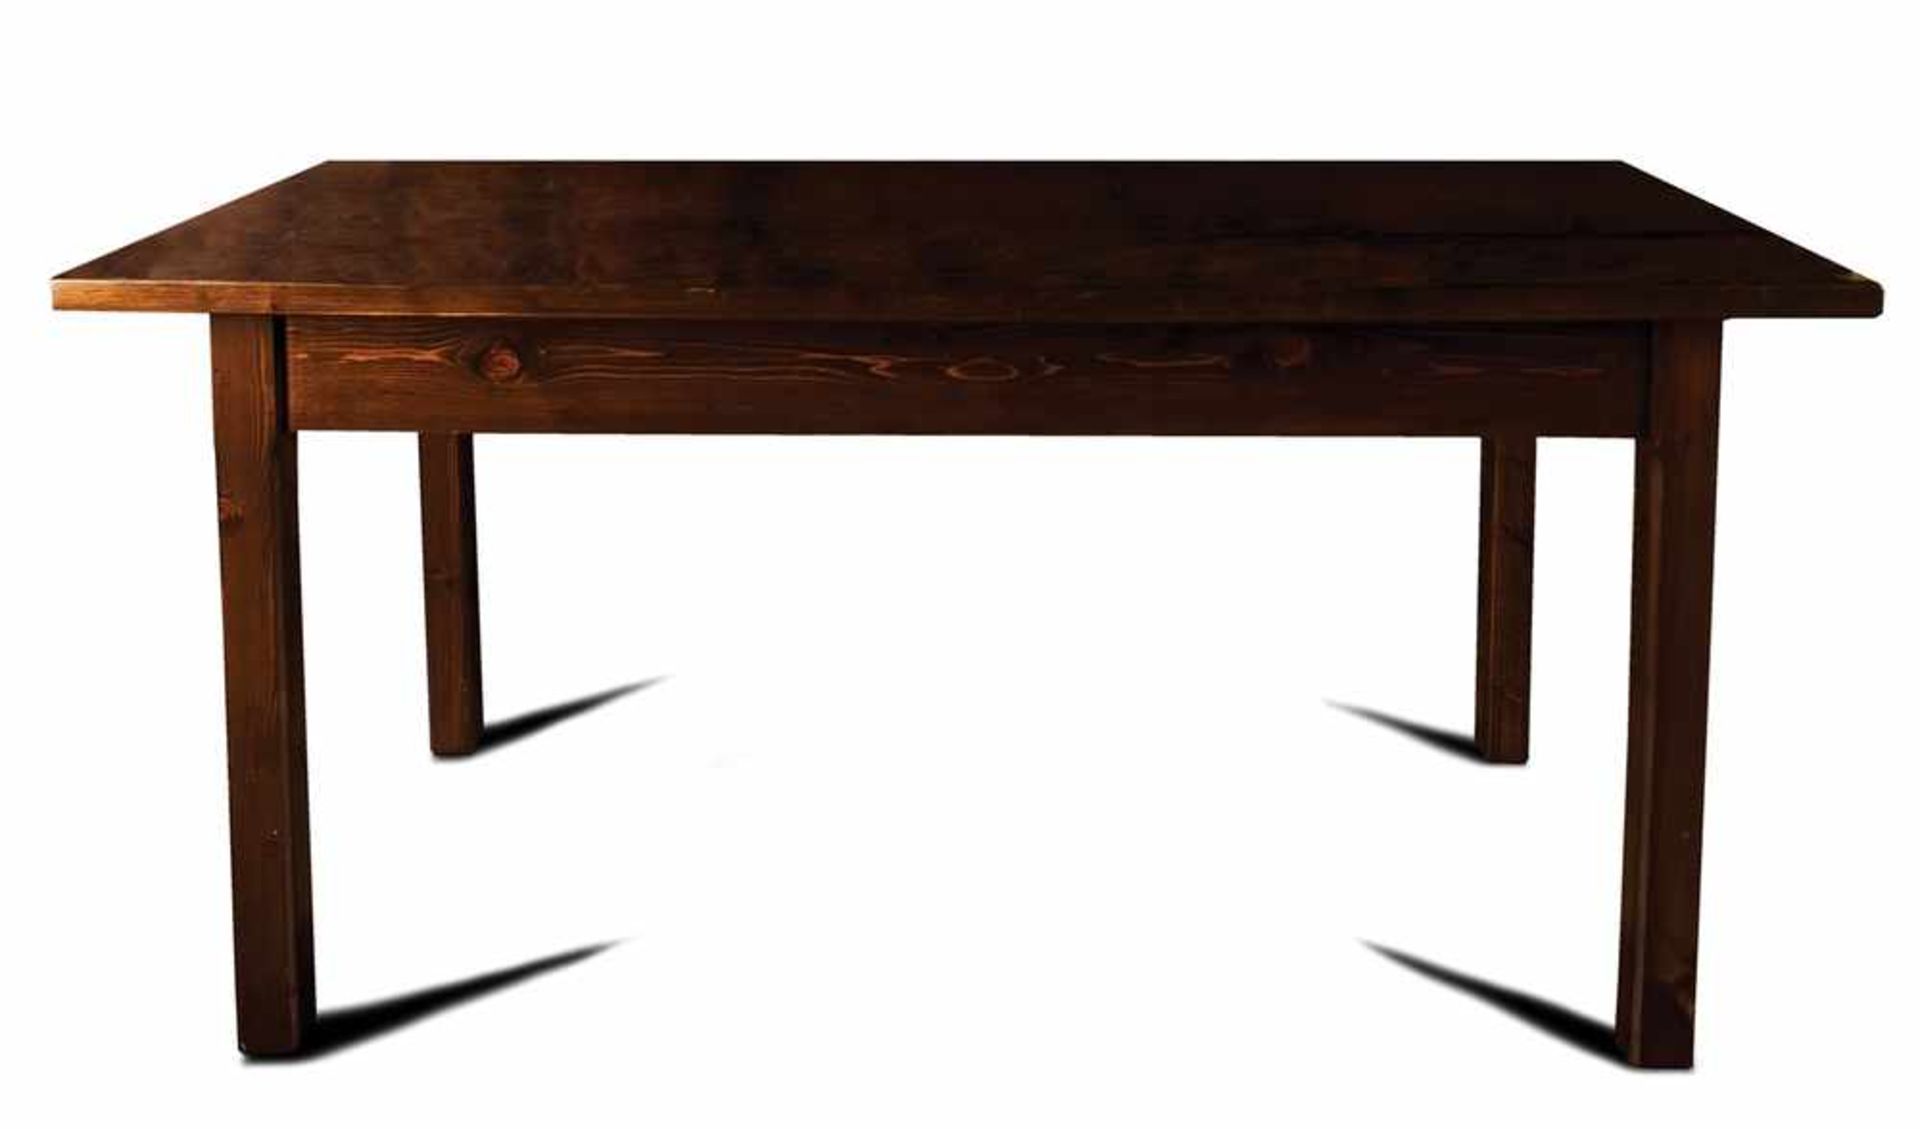 TAVOLO D'APPOGGIO | TABLE Tavolo d'appoggio creato come base per la teca presepiale, misure cm